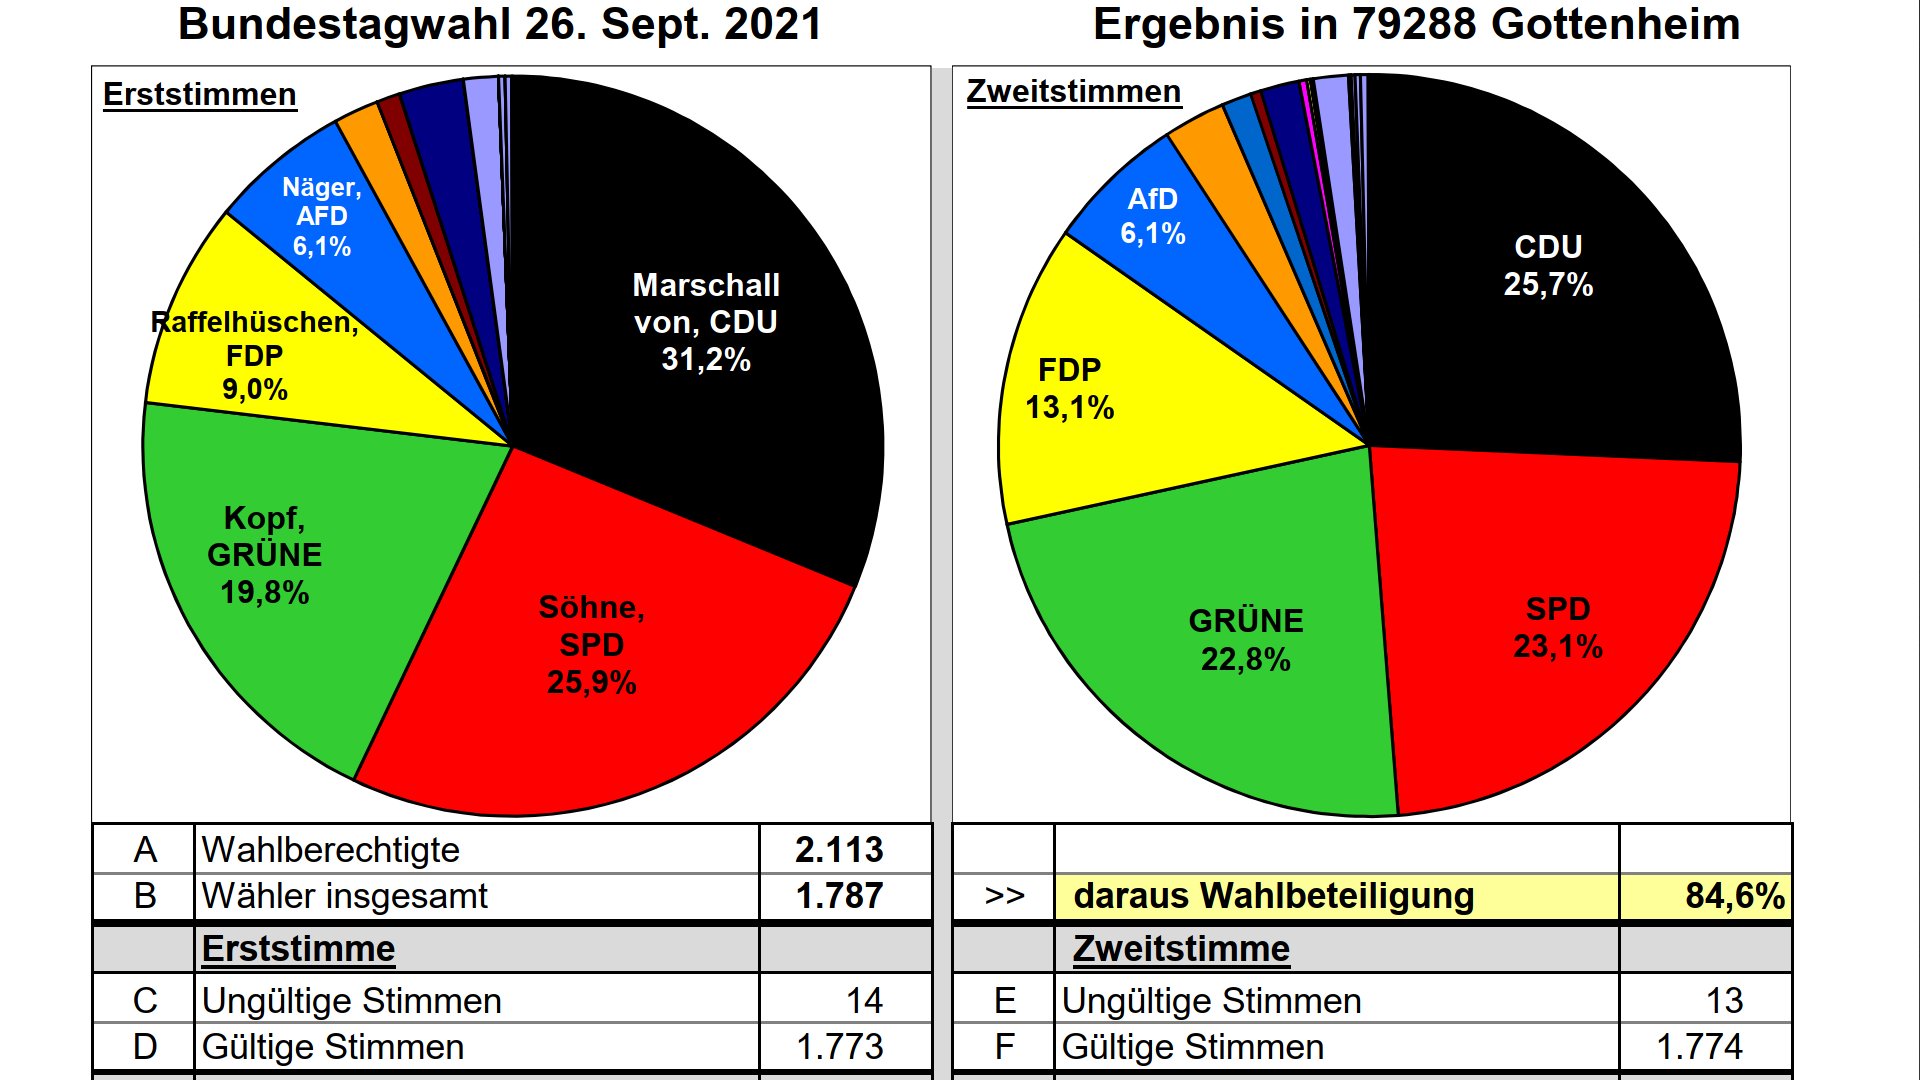 Bundestagswahlergebnis Gottenheim